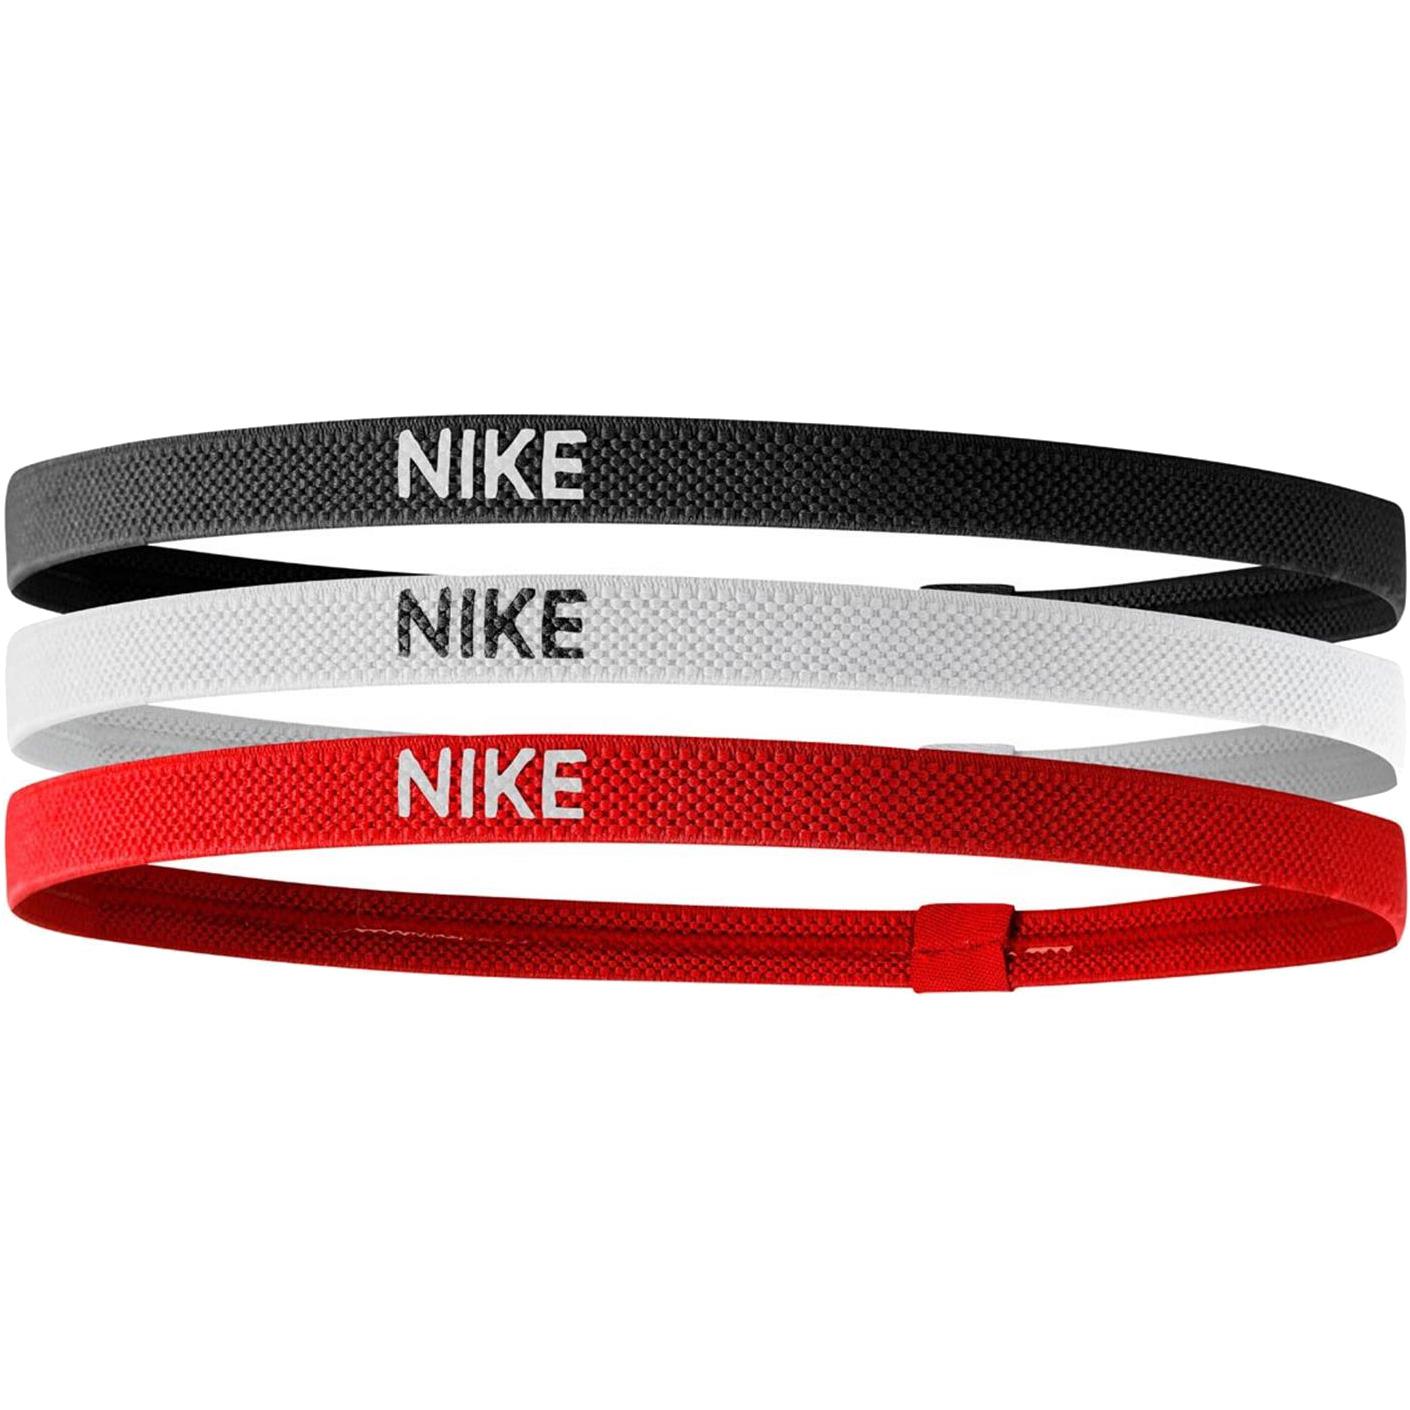 Nike Elastic Hairbands (Pack of 3) - Red/Black/White - Tennisnuts.com